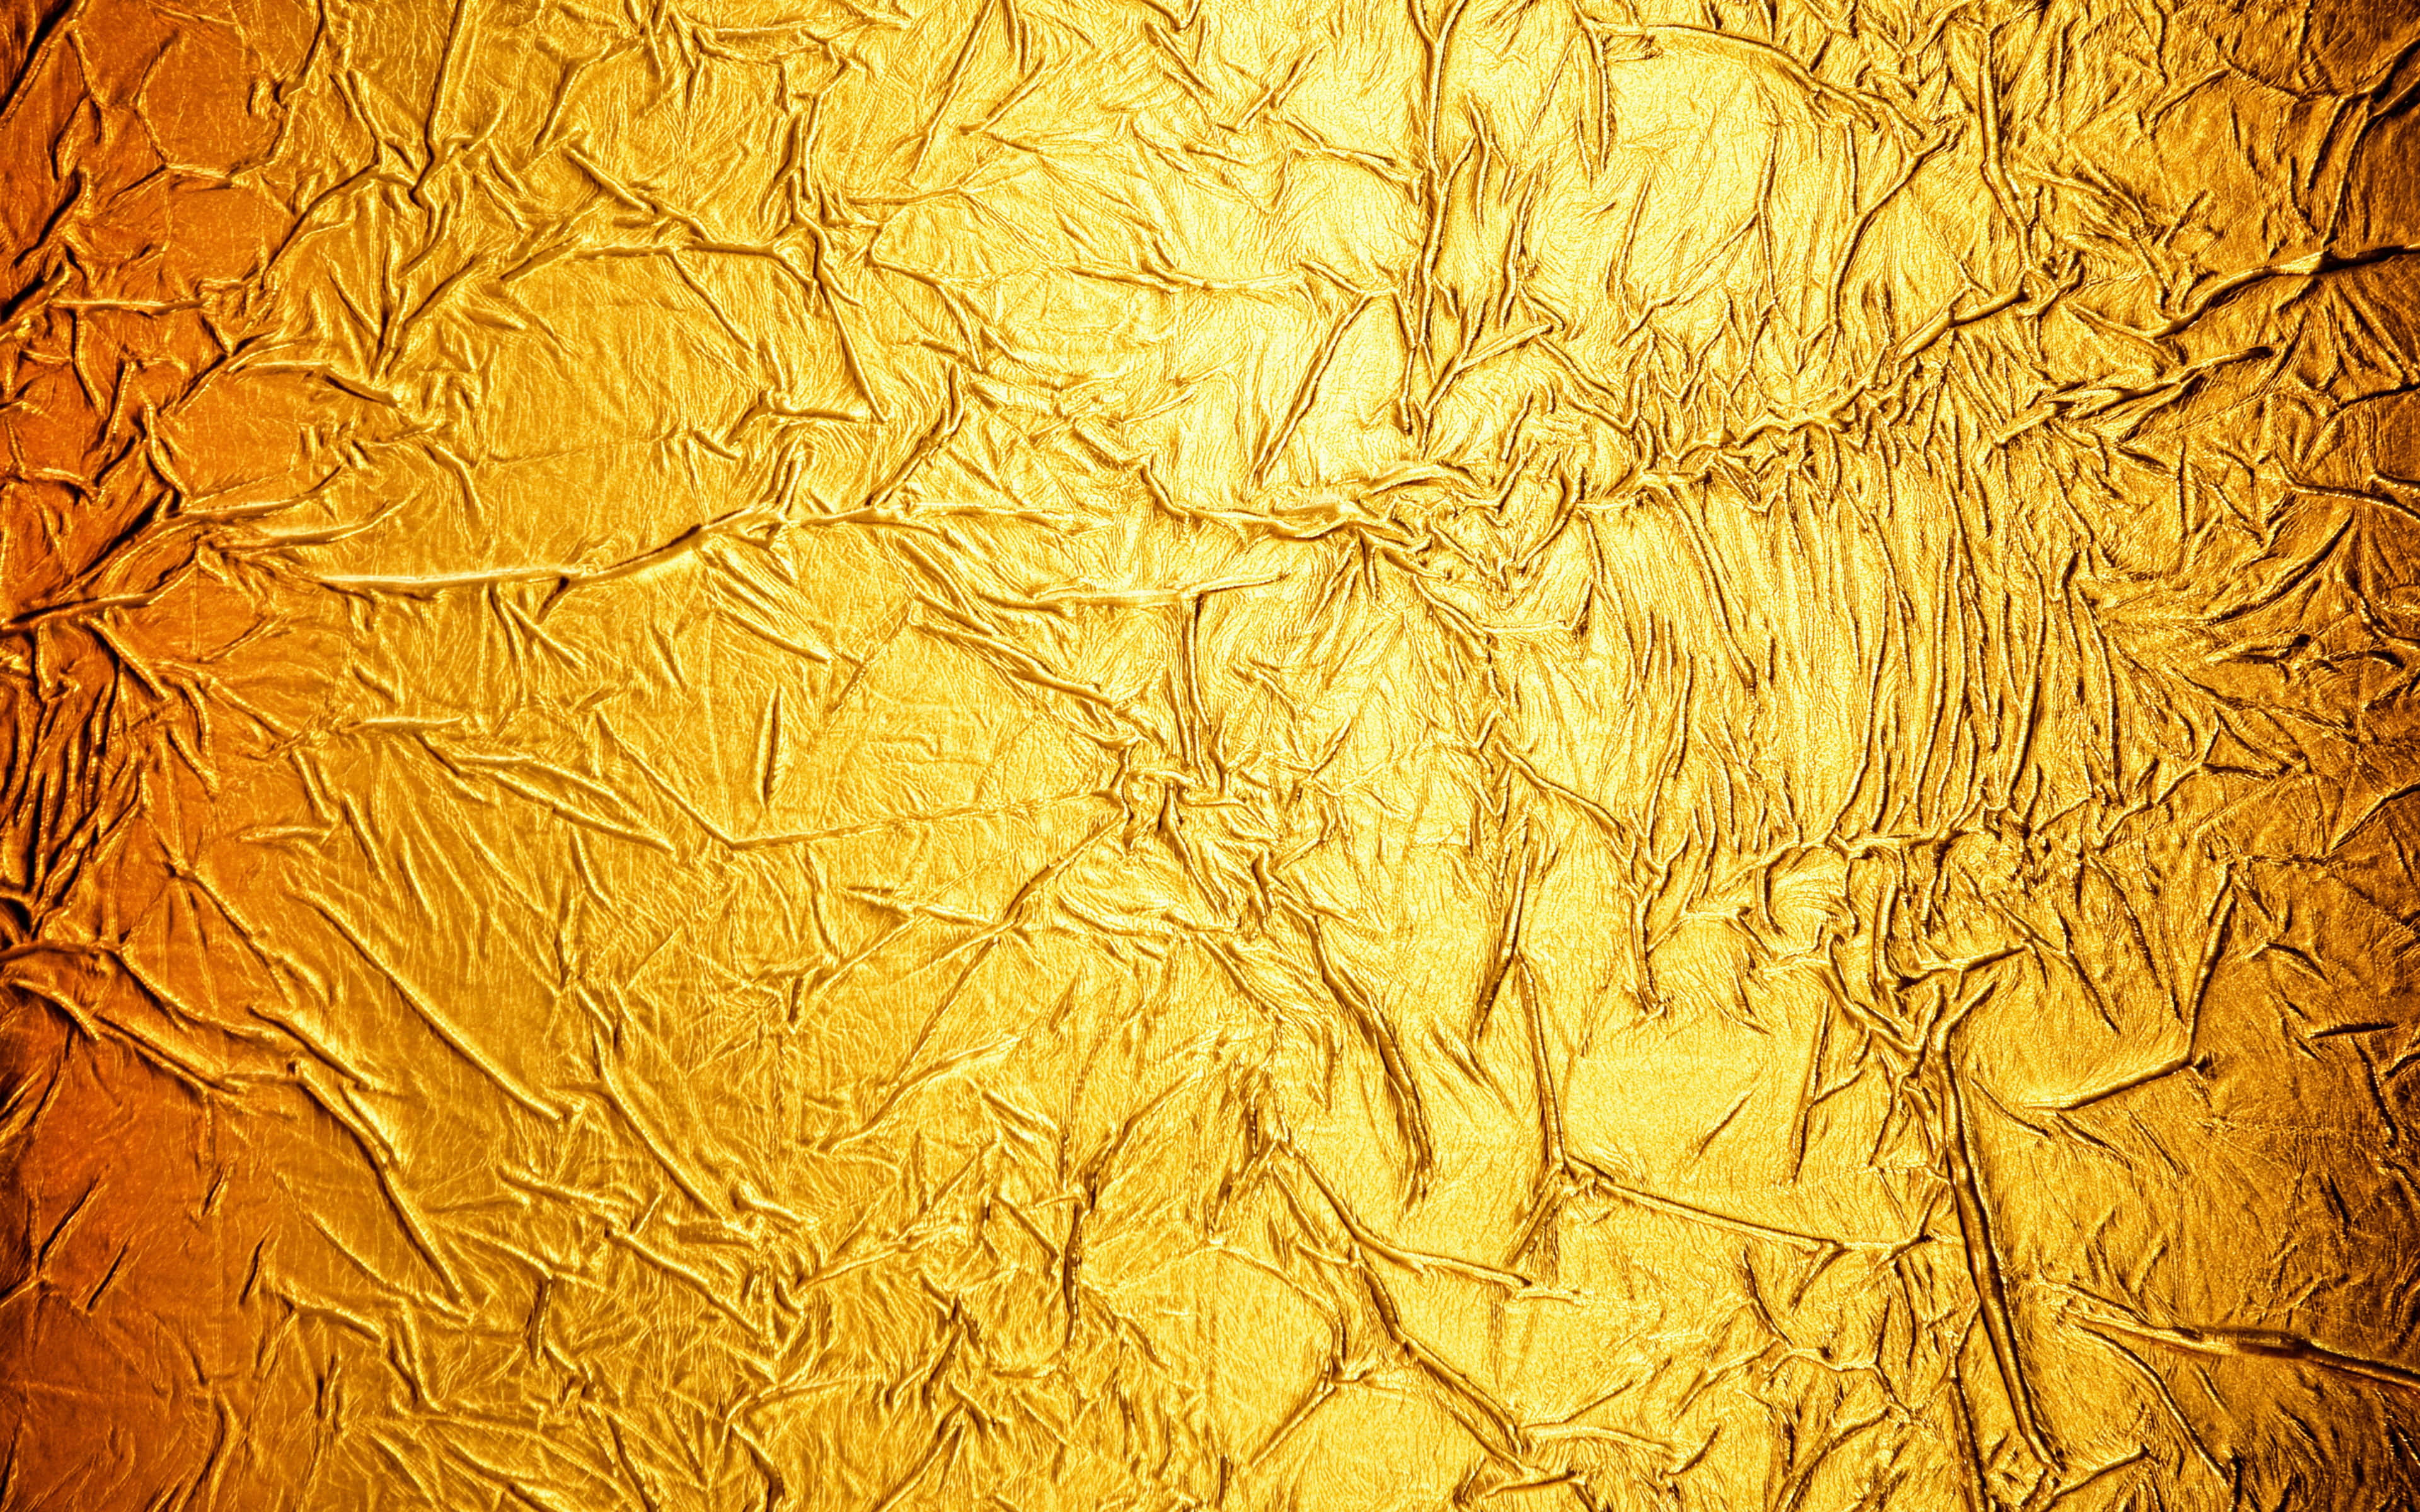 Shiny Gold background radiates brilliance